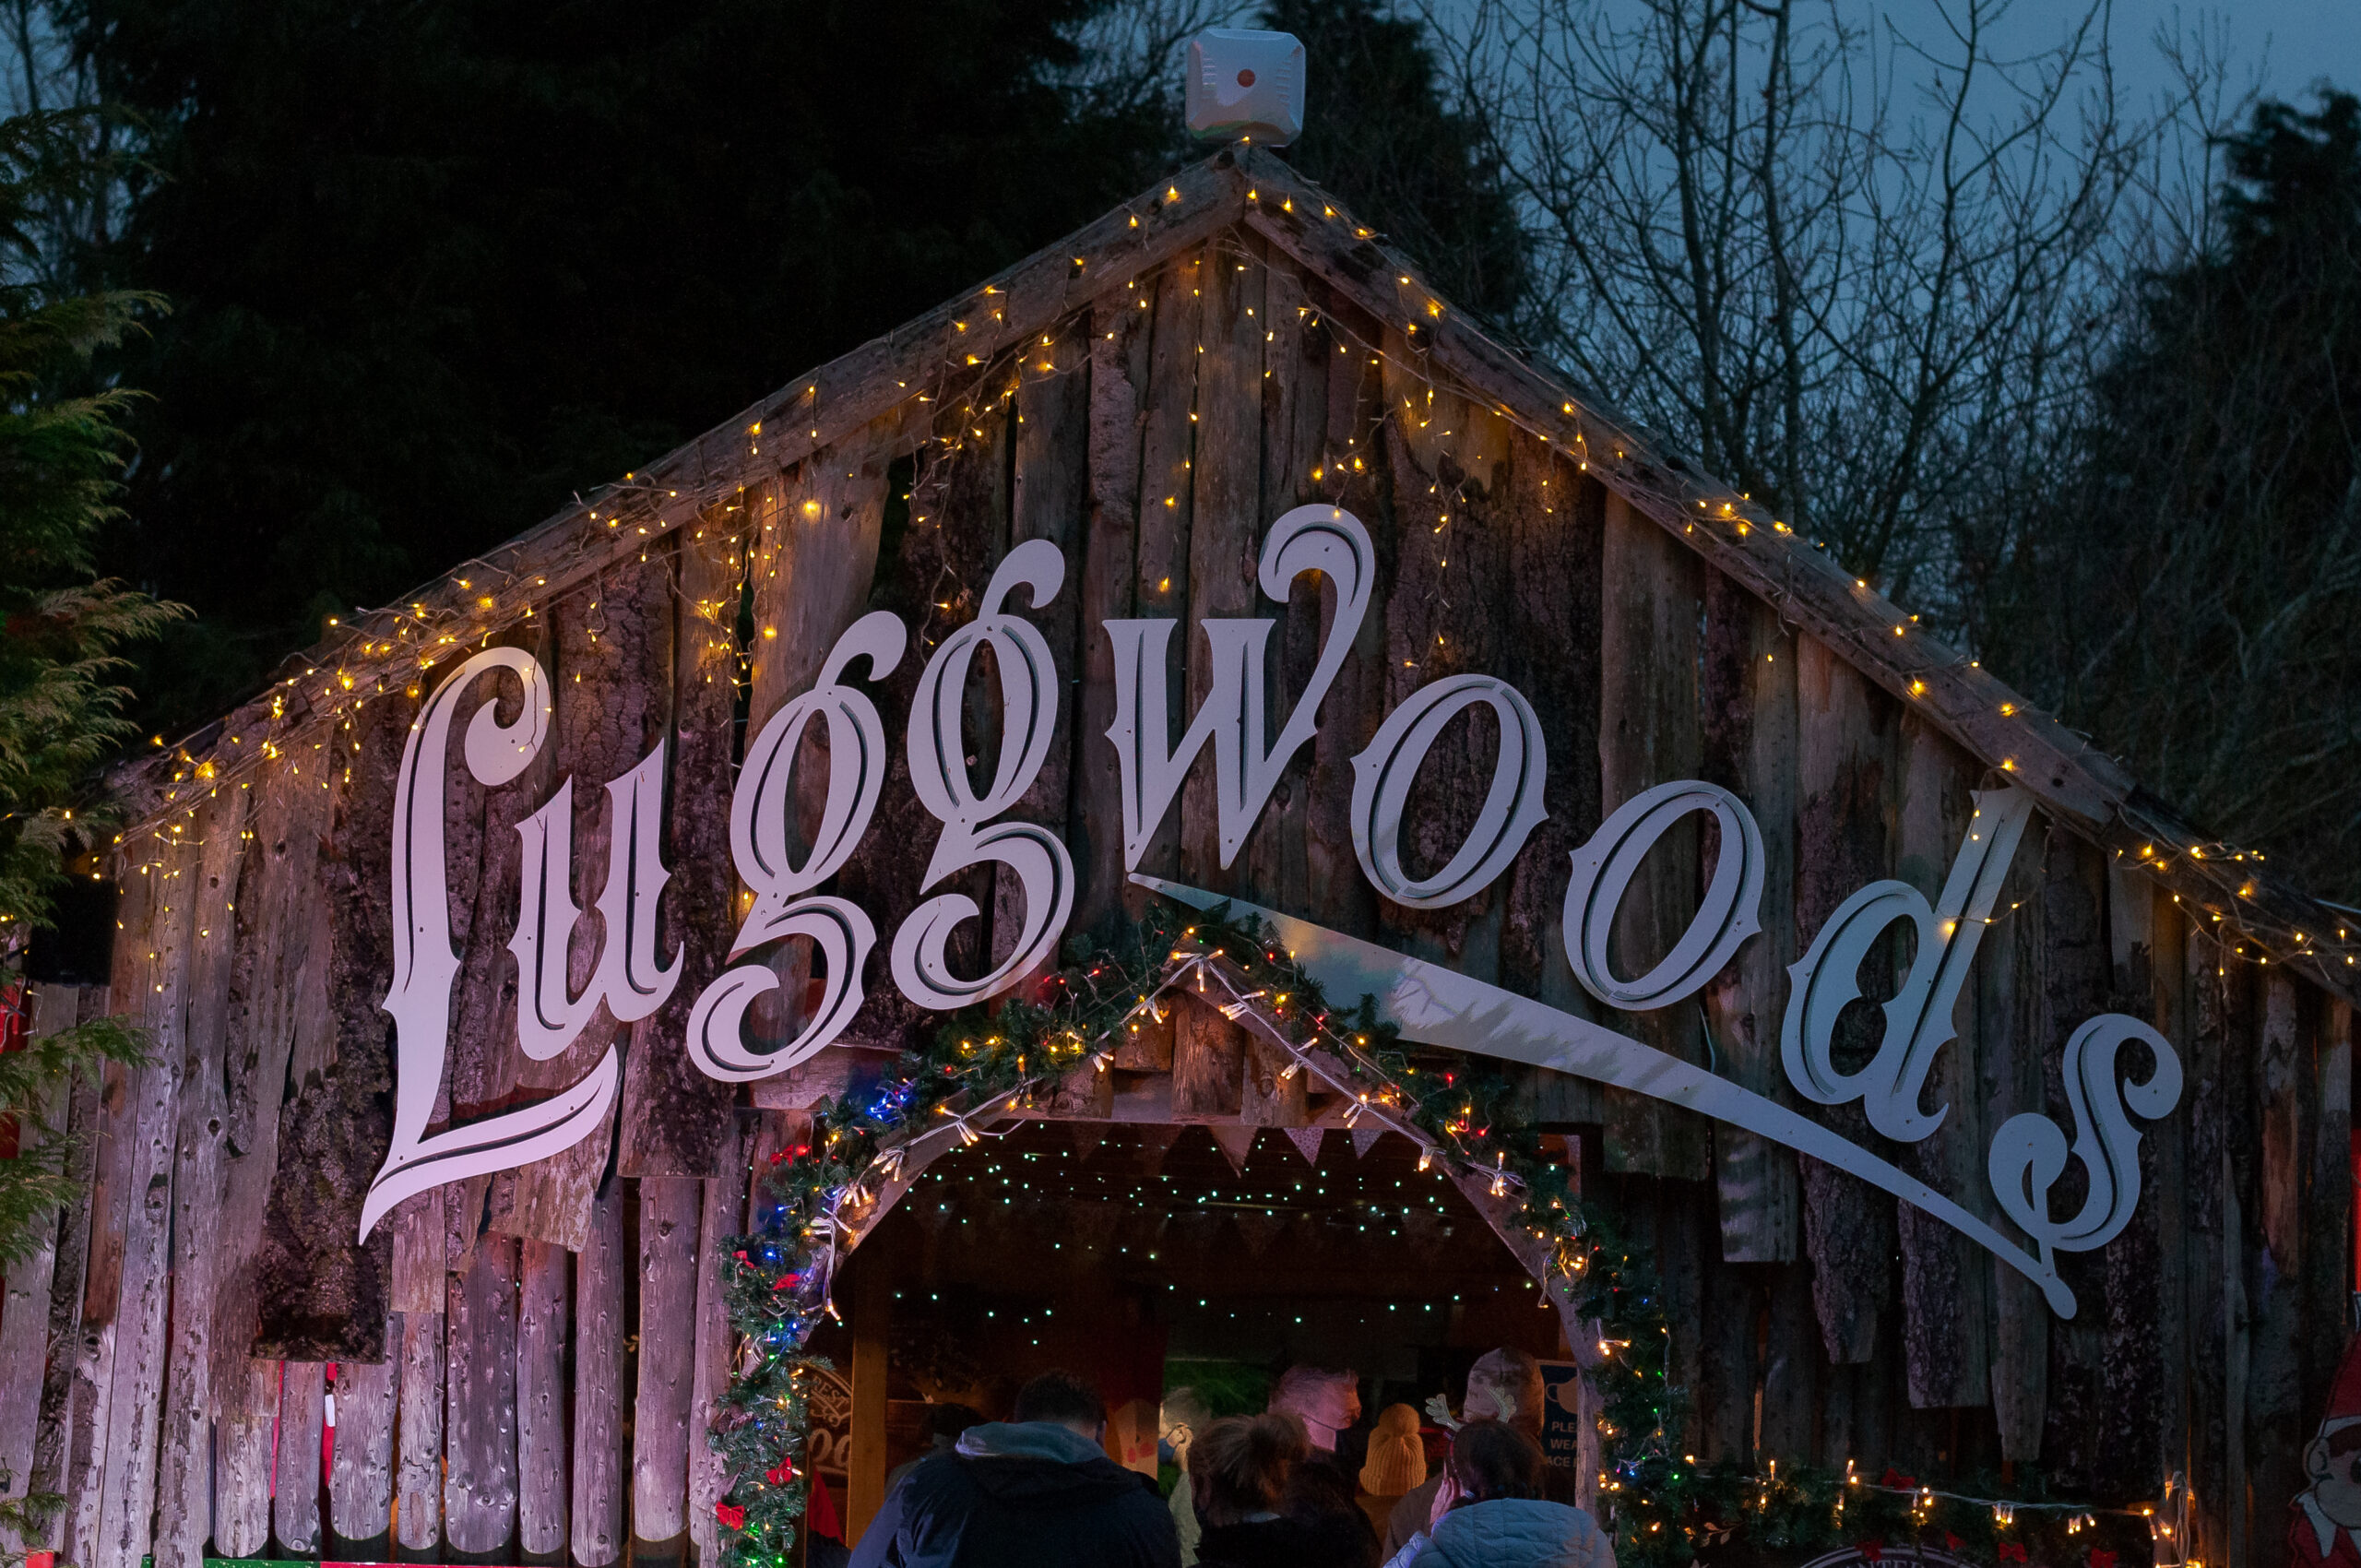 luggwoods-christmas-2021-5758